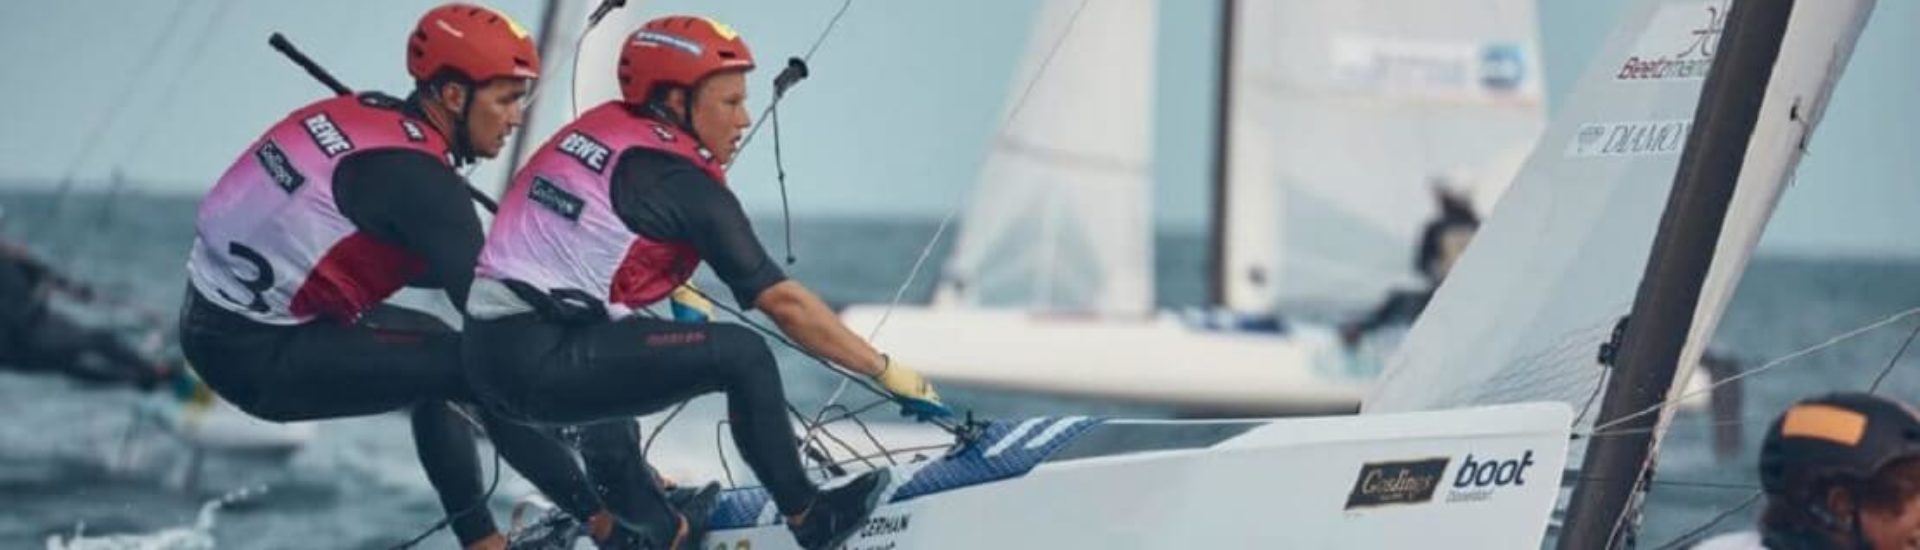 Olympia 2021: Deutsche Segel-Teams weiter auf Medaillenkurs